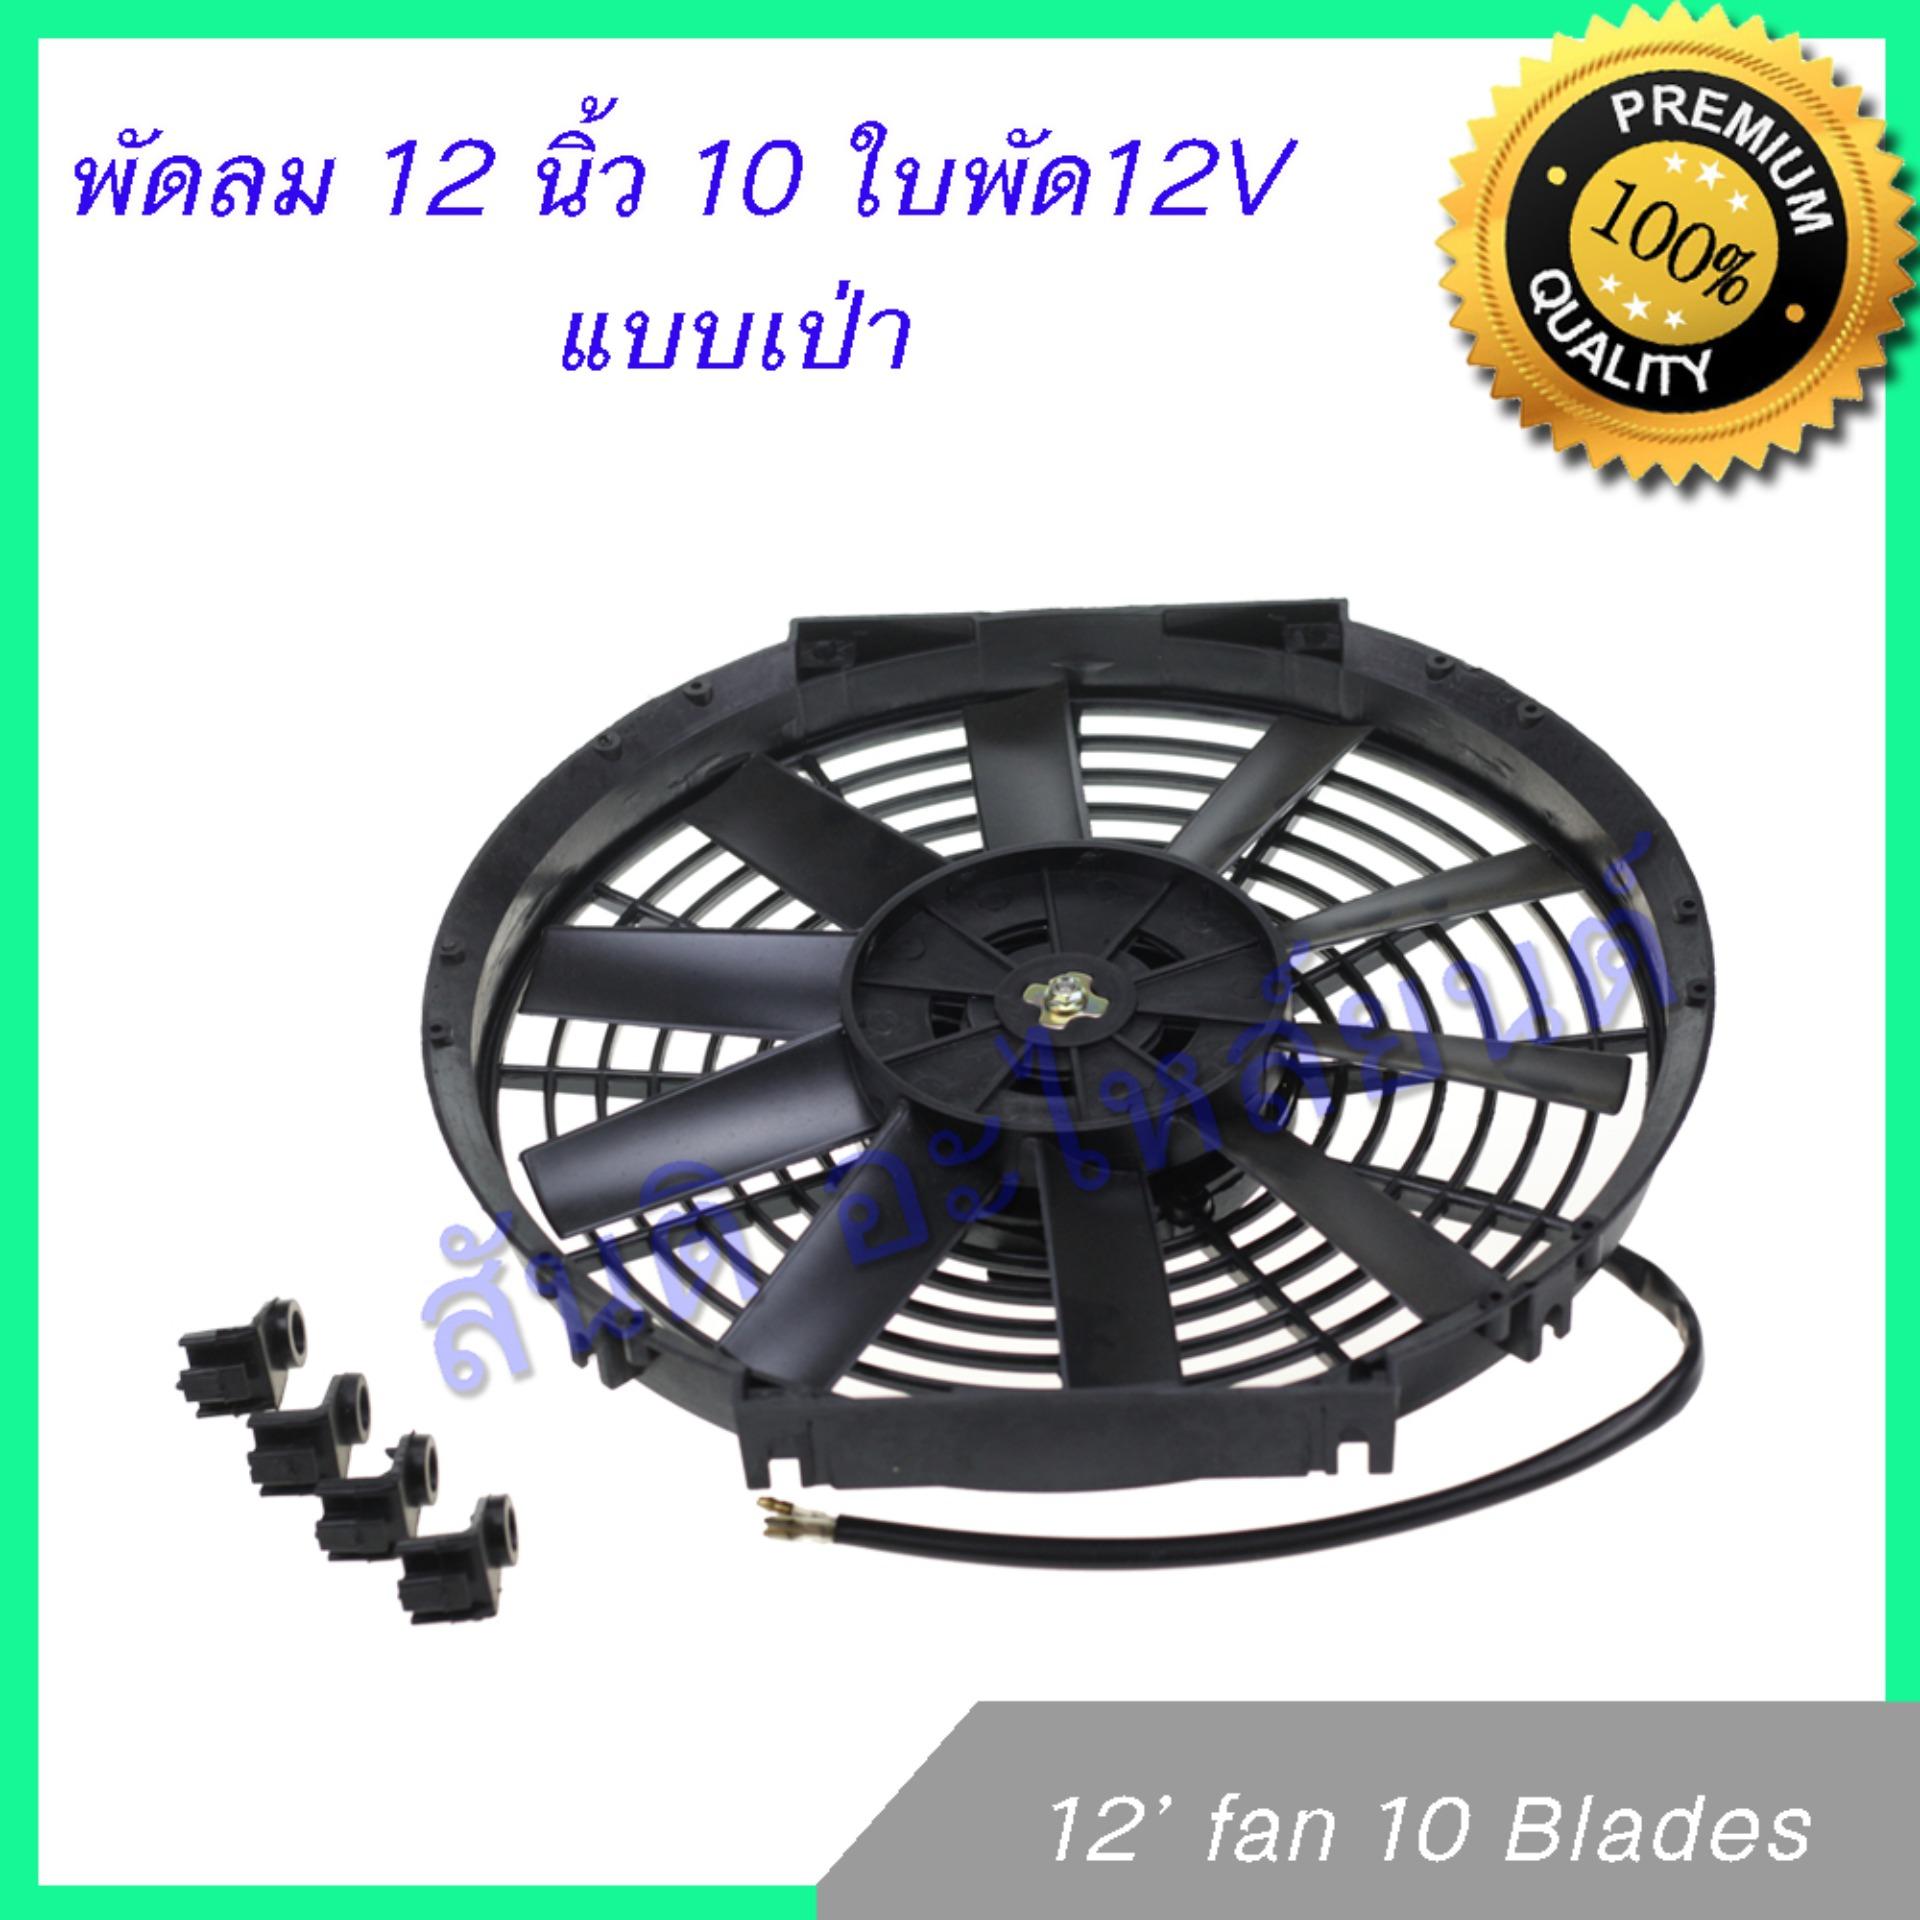 พัดลม 12 นิ้ว 10 ใบ 12V พัดลมหม้อน้ำ พัดลมแผงร้อน Fan 12 inch 10 blades condenser Radiator fan